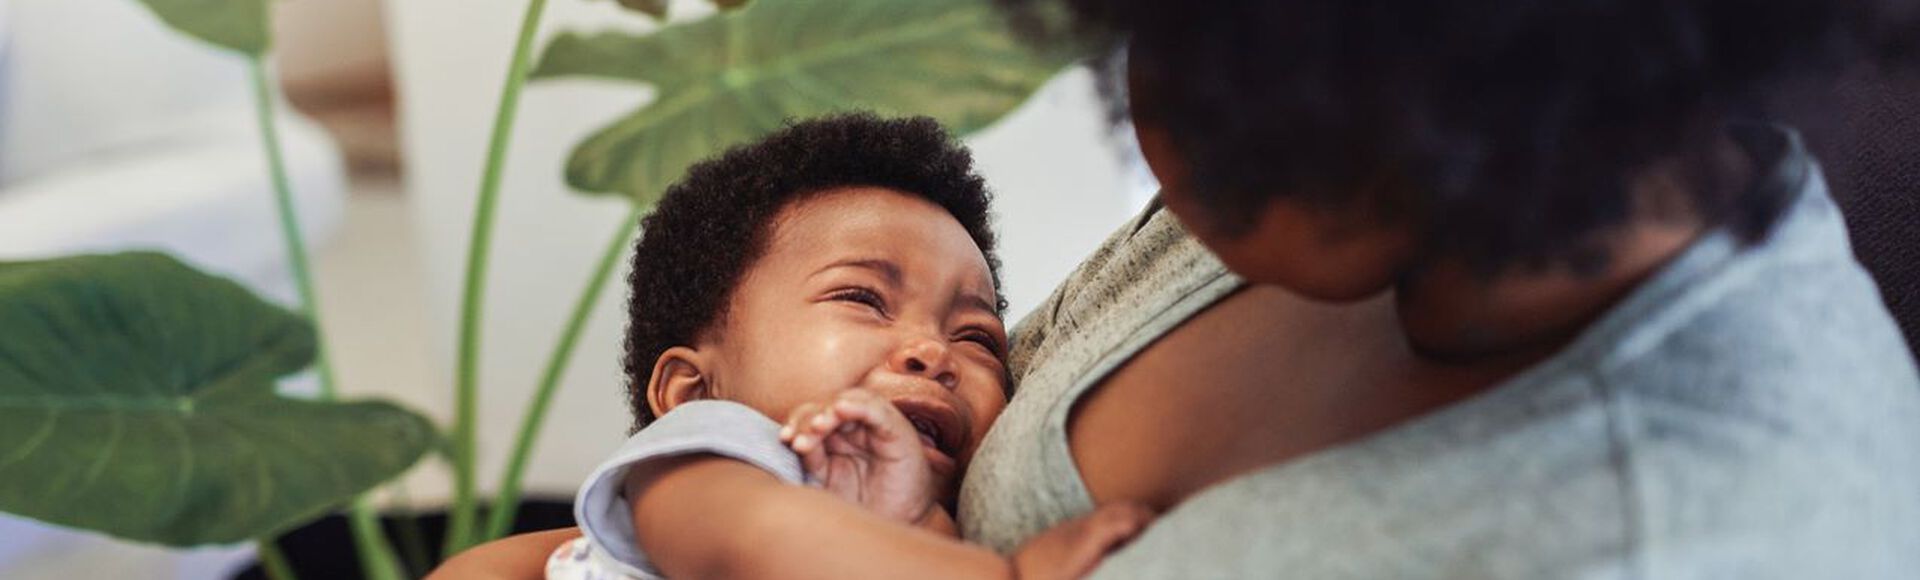 Mamãe consola bebê chorando na hora da bruxa. Não vemos o rosto da mãe que está olhando para o bebê no colo. Os dois são negros.